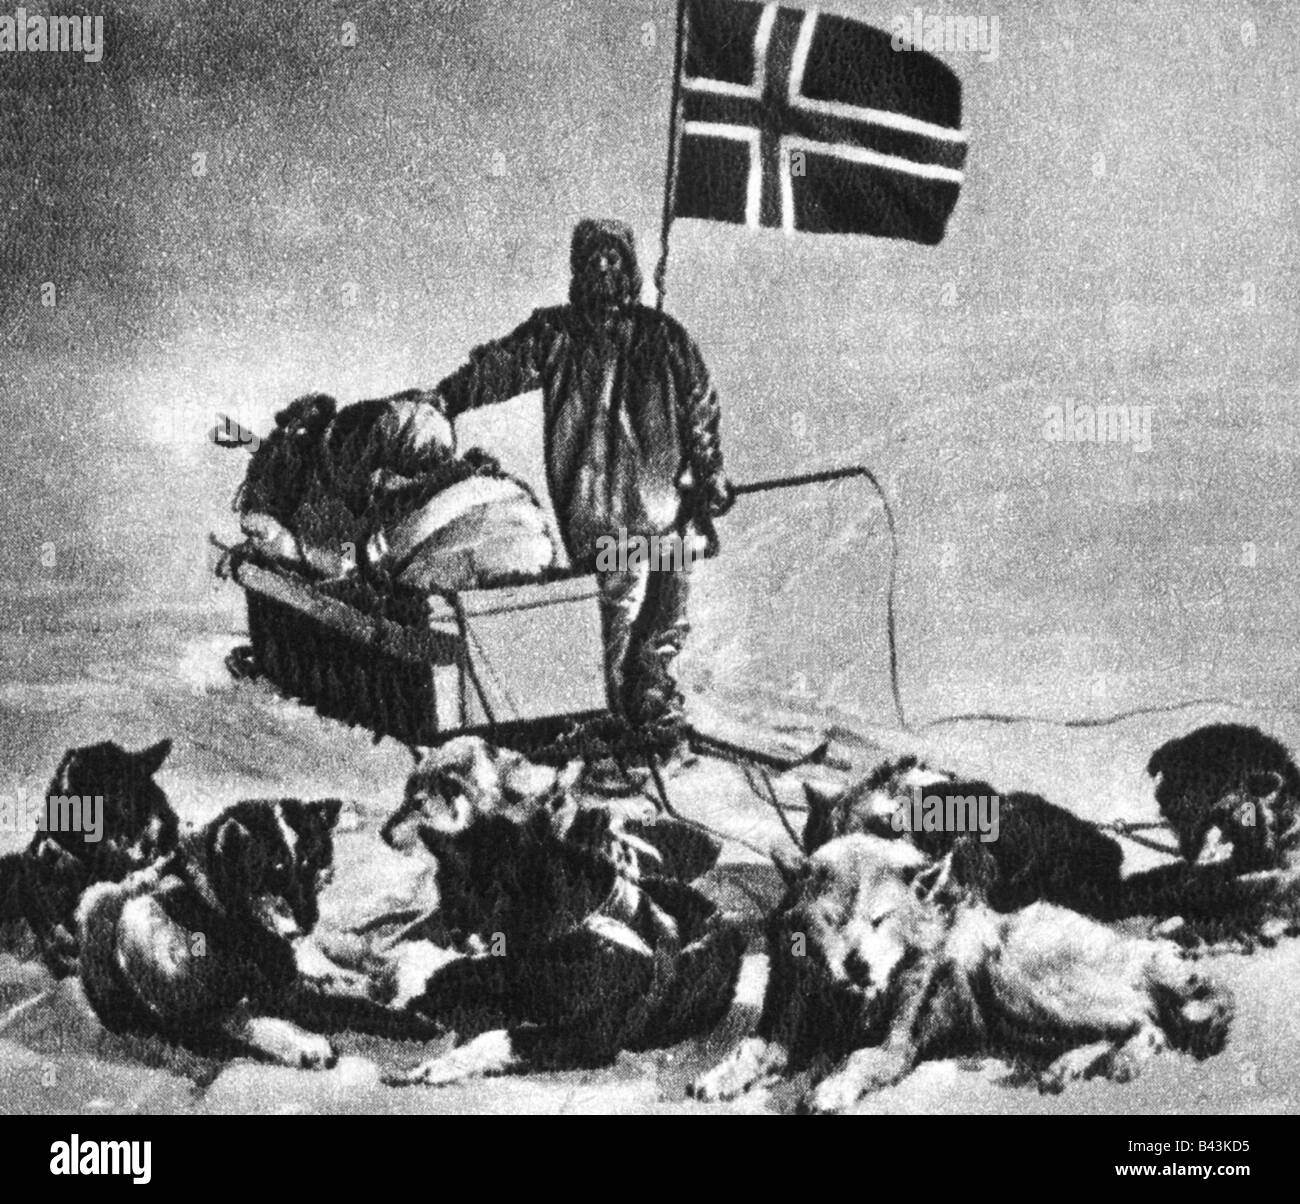 Amundsen, Roald 16.7.1872 - Juni 1928, norwegischer Entdecker, Hoist norwegische Flagge, 16.12.1911, antarktis, Südpol, Dogsled, Hundeschlitten, Stockfoto